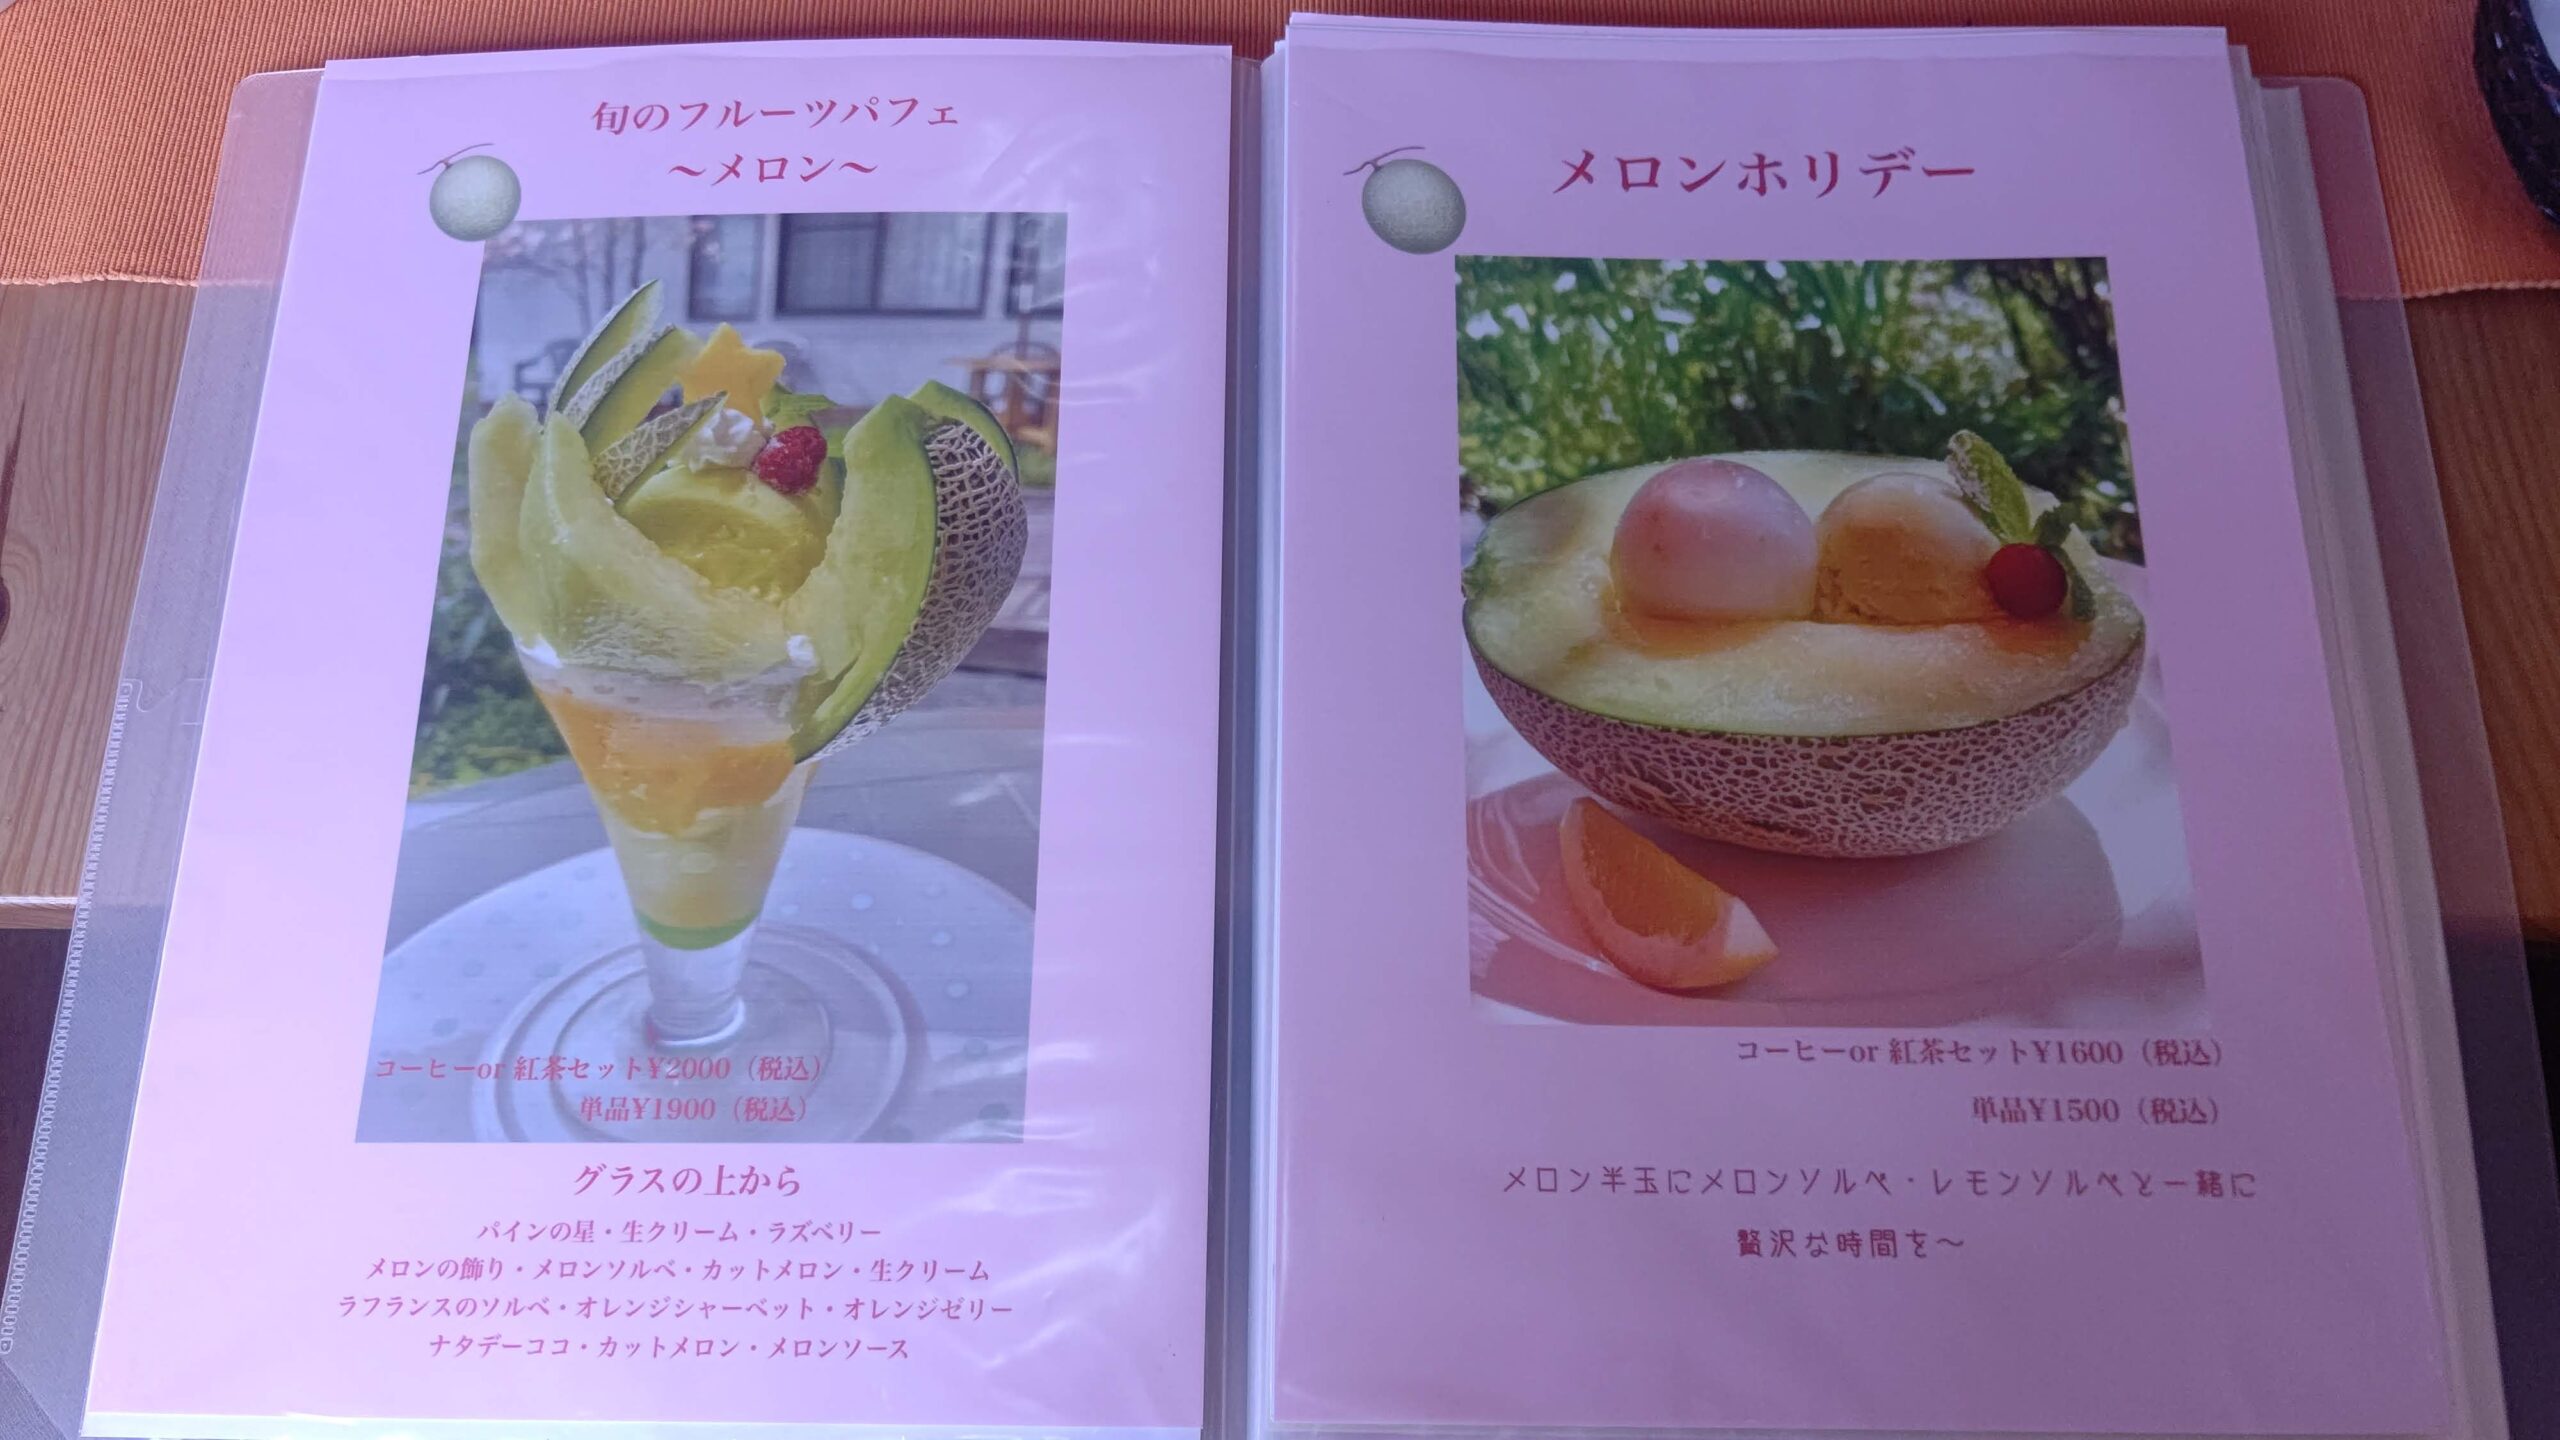 長野県佐久市 フルーツおばさんのカフェ 花水木 メニュー 旬のフルーツパフェ